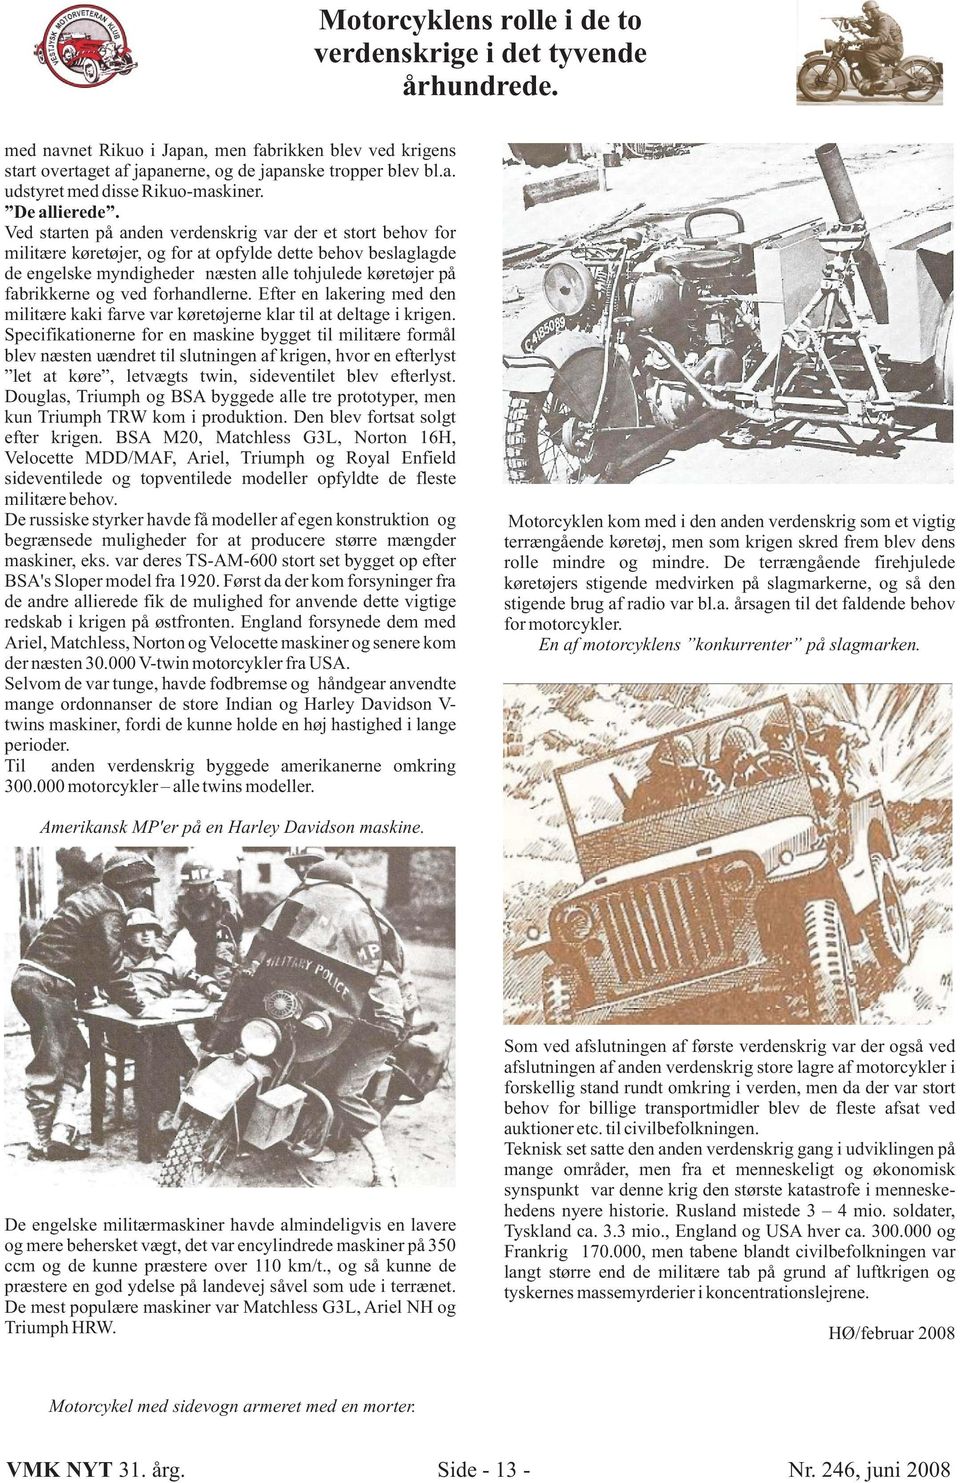 Ved starten på anden verdenskrig var der et stort behov for militære køretøjer, og for at opfylde dette behov beslaglagde de engelske myndigheder næsten alle tohjulede køretøjer på fabrikkerne og ved